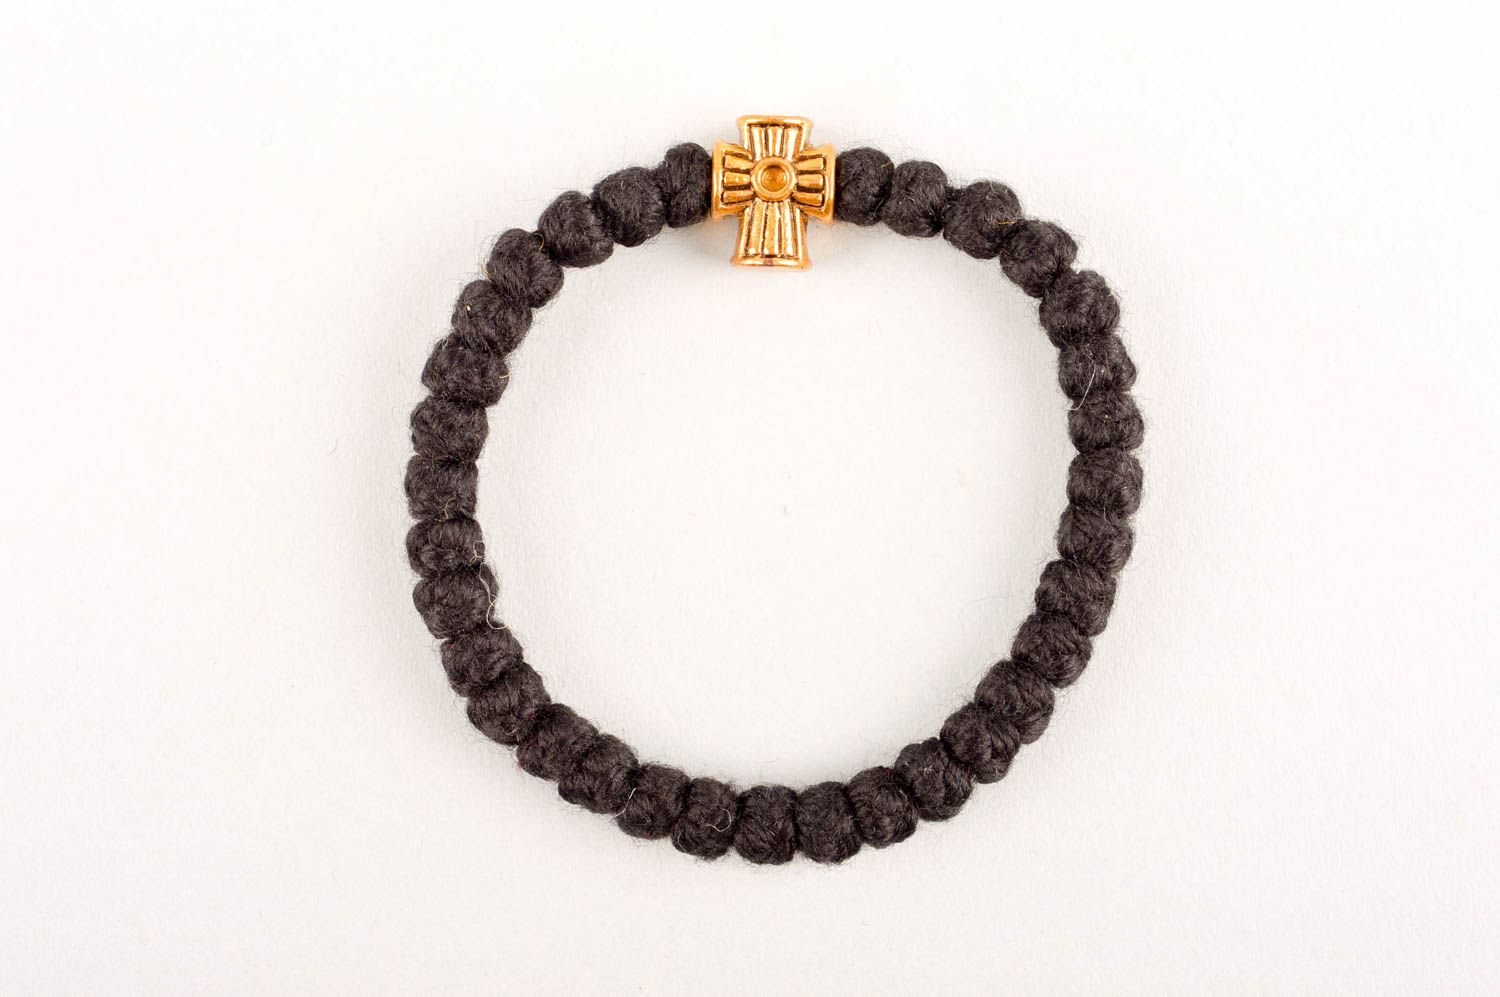 Handmade bracelet designer braсelet rosary bracelet unusual bracelet gift ideas photo 2